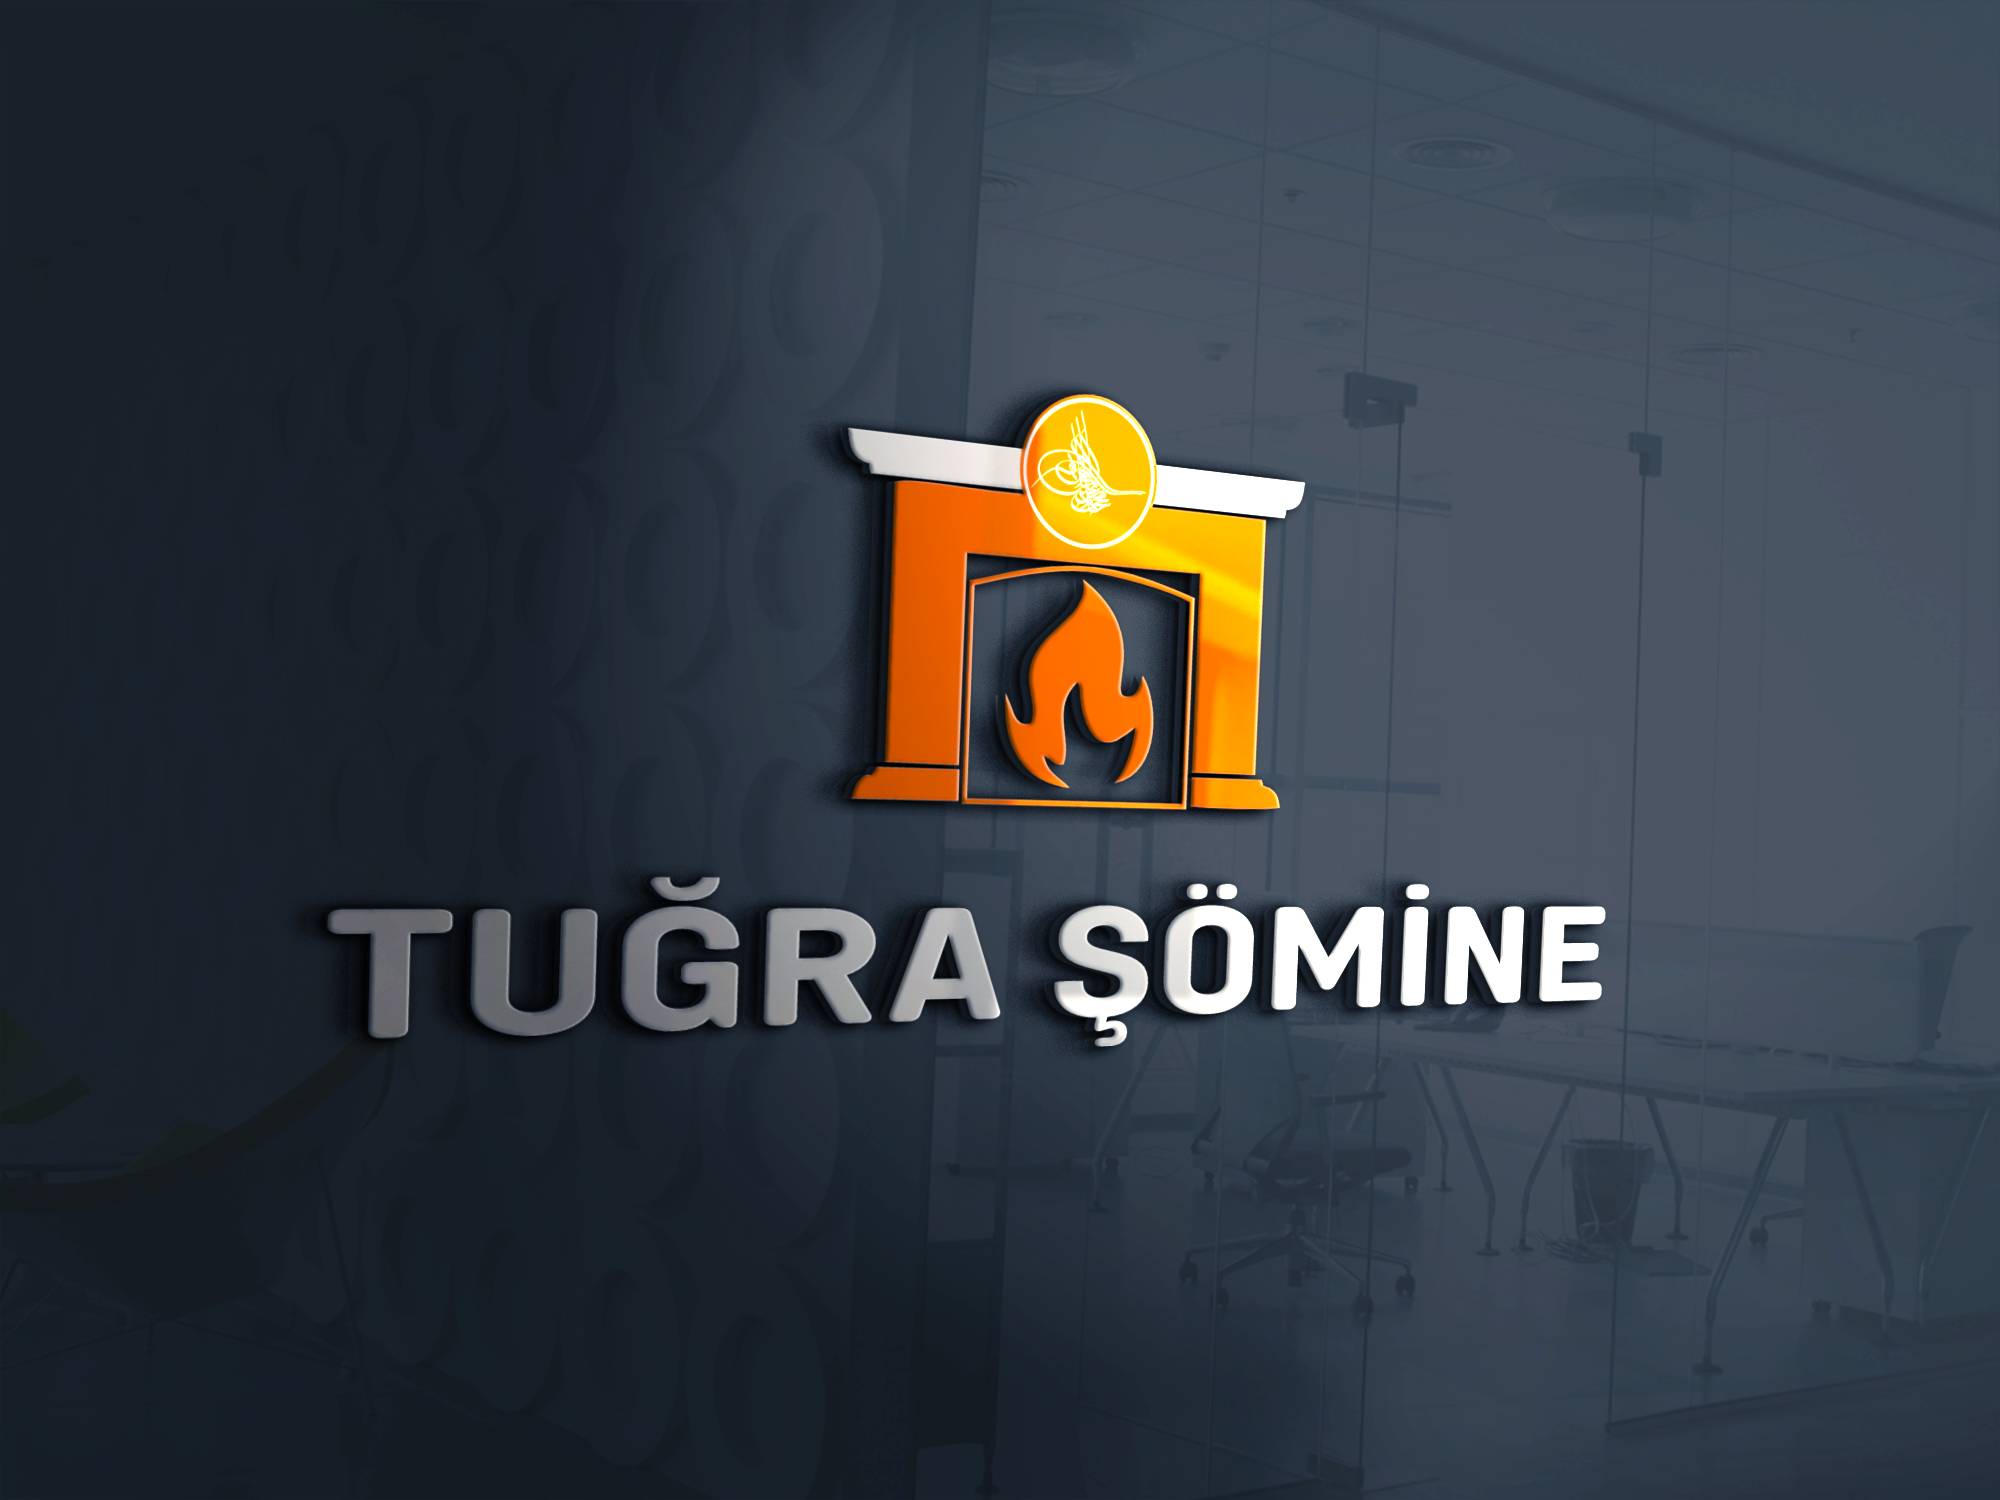 tugra-somine-logo-3d